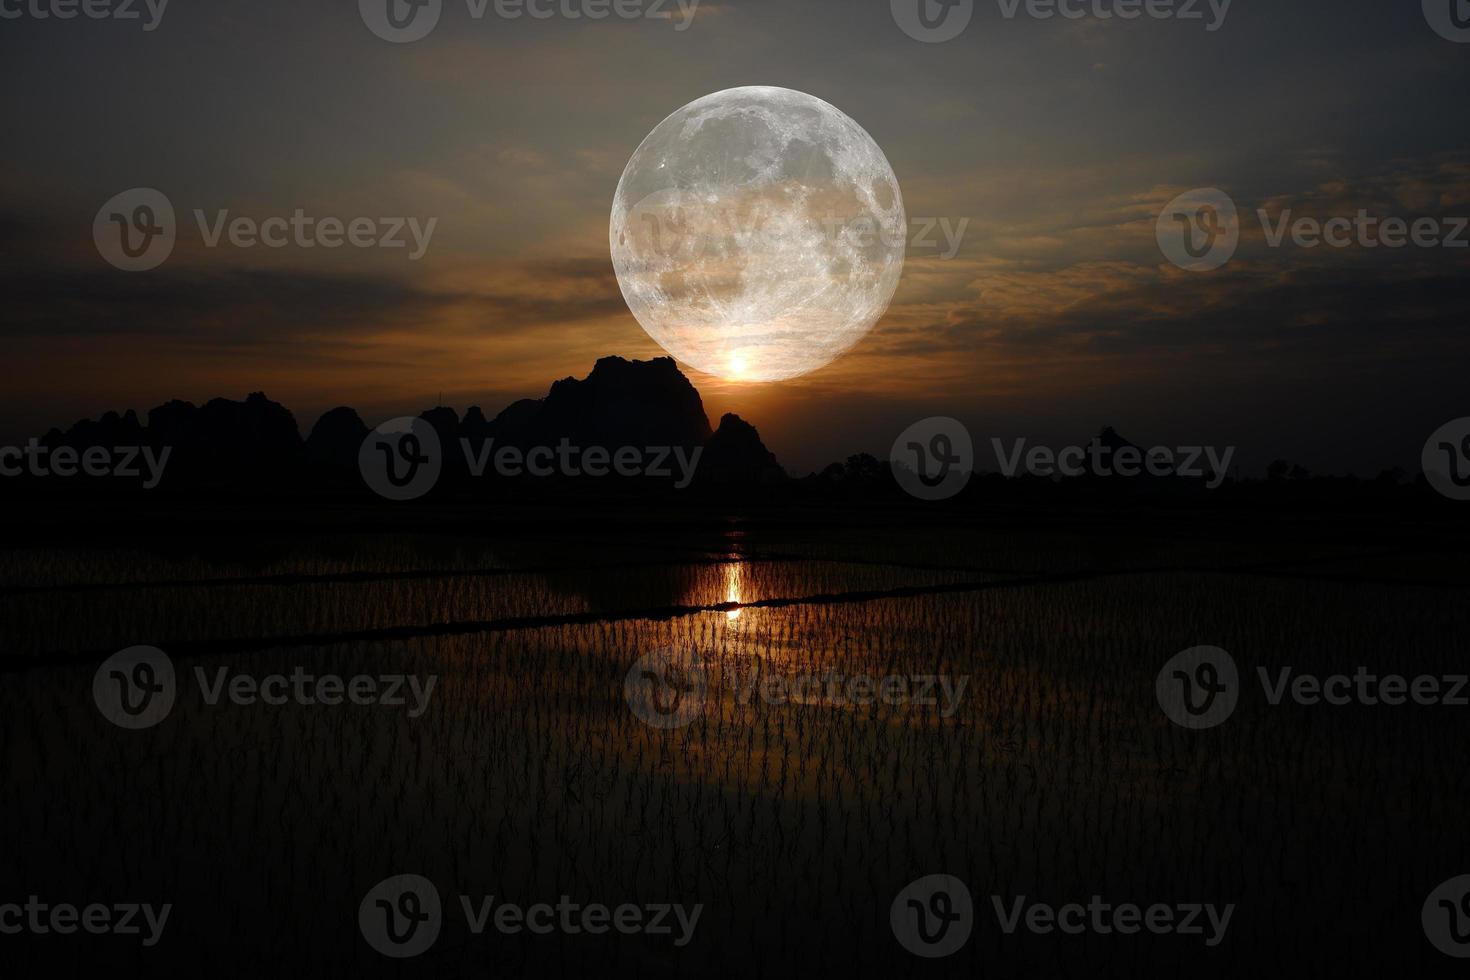 la luna llena a través del campo de arroz. la luna llena es la fase lunar cuando la luna aparece completamente iluminada desde la perspectiva de la tierra. esto ocurre cuando la tierra se encuentra entre el sol y la luna. foto